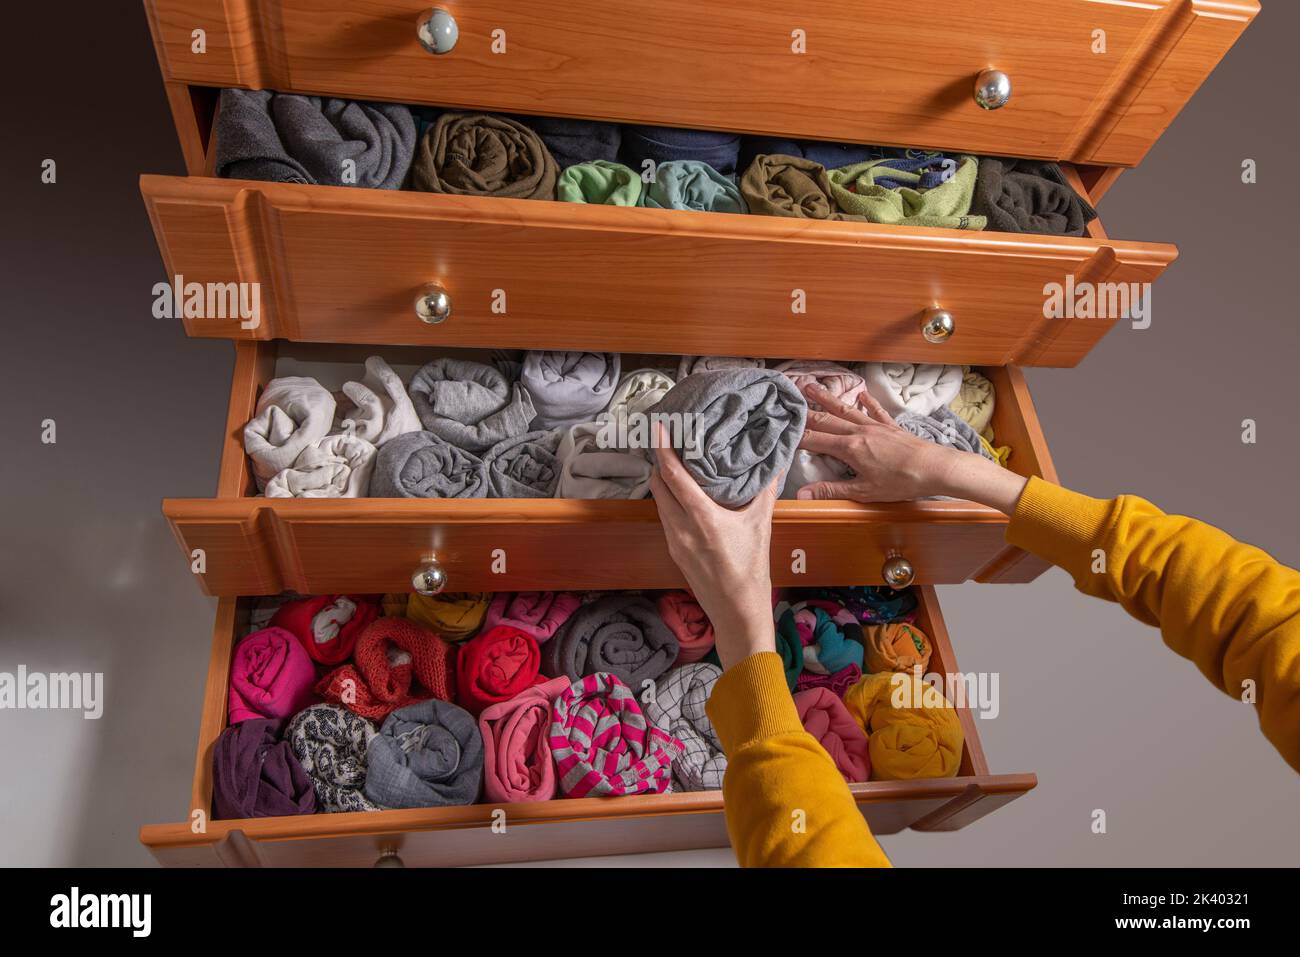 Reinigung und Sortierung von Kleidung in der Garderobe japanische Methode. Offene Kommoden mit vertikal verdrehter Kleidung. Blick von oben. Stockfoto